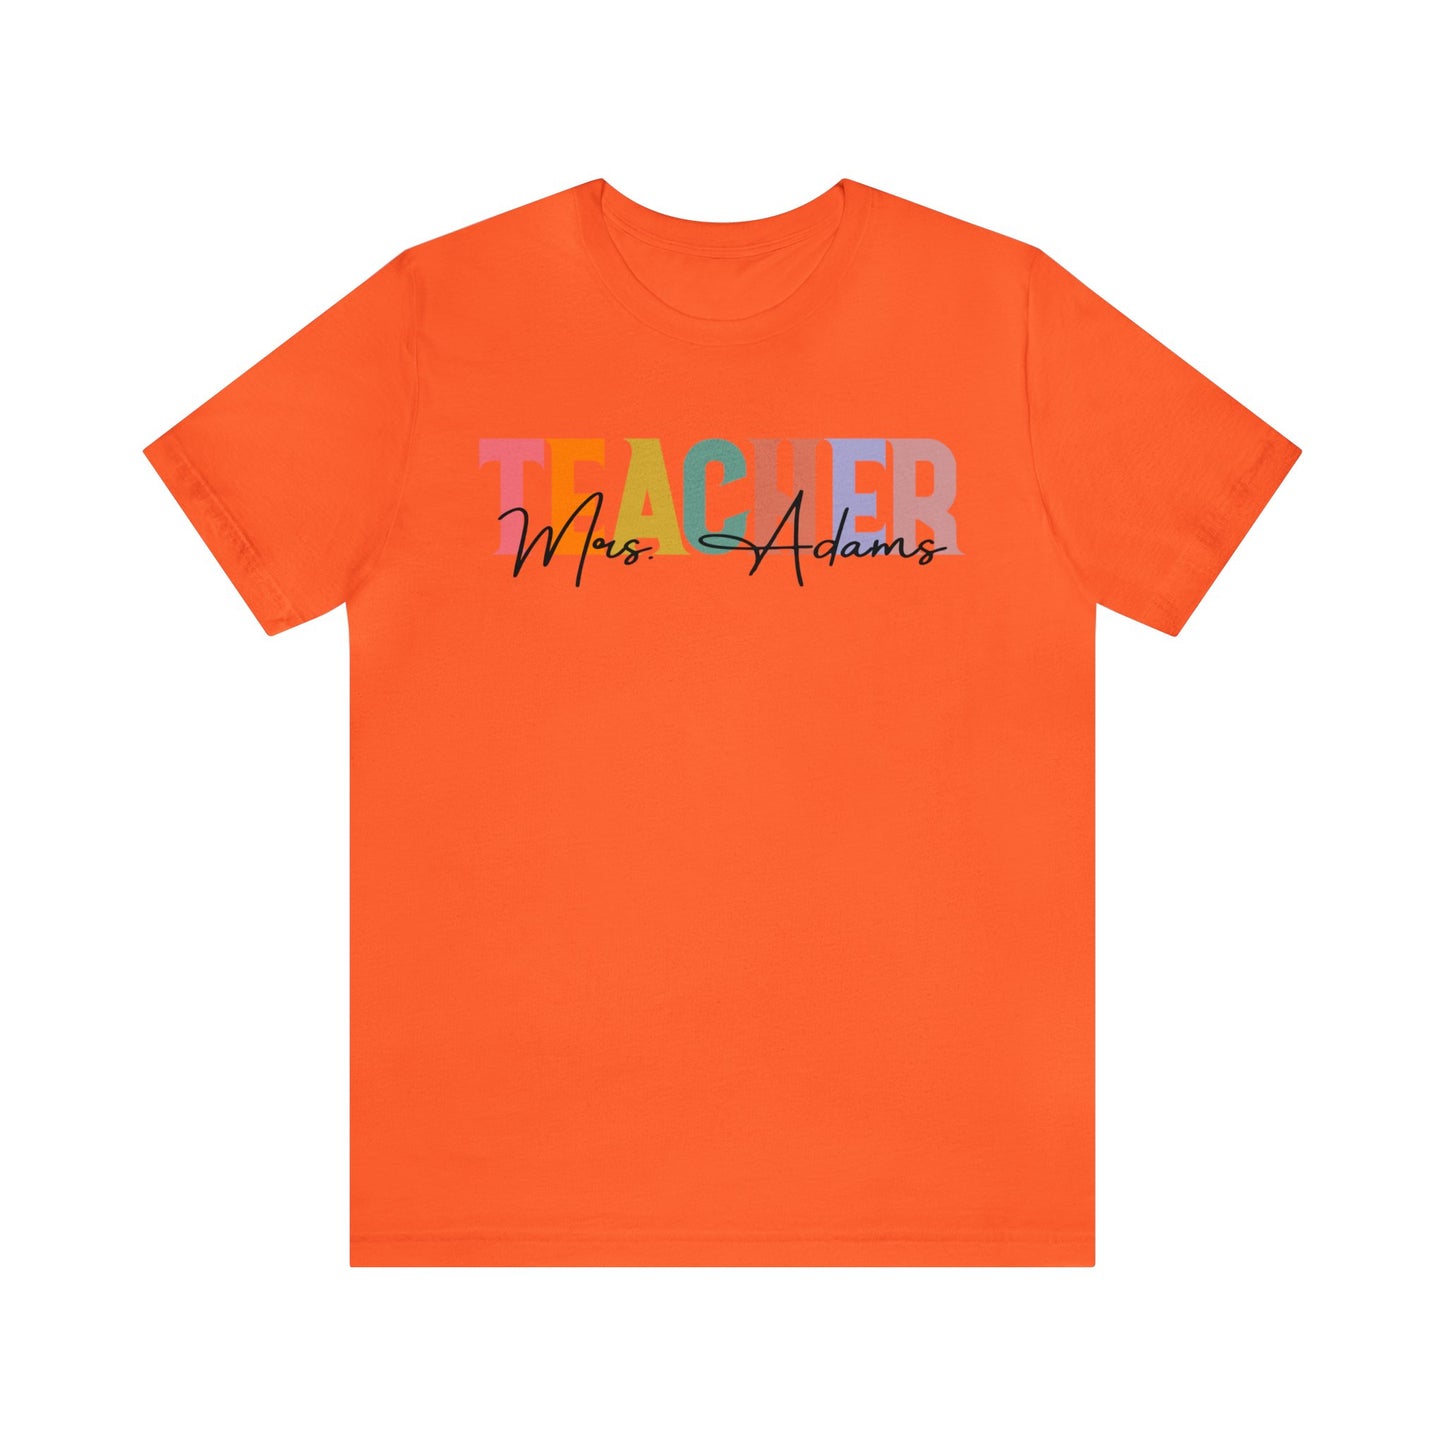 Personalized Teacher Name Shirt, Best Teacher Shirt, Teacher Appreciation Shirt, Teacher's Day Gift, Custom Teacher Shirt, T1493